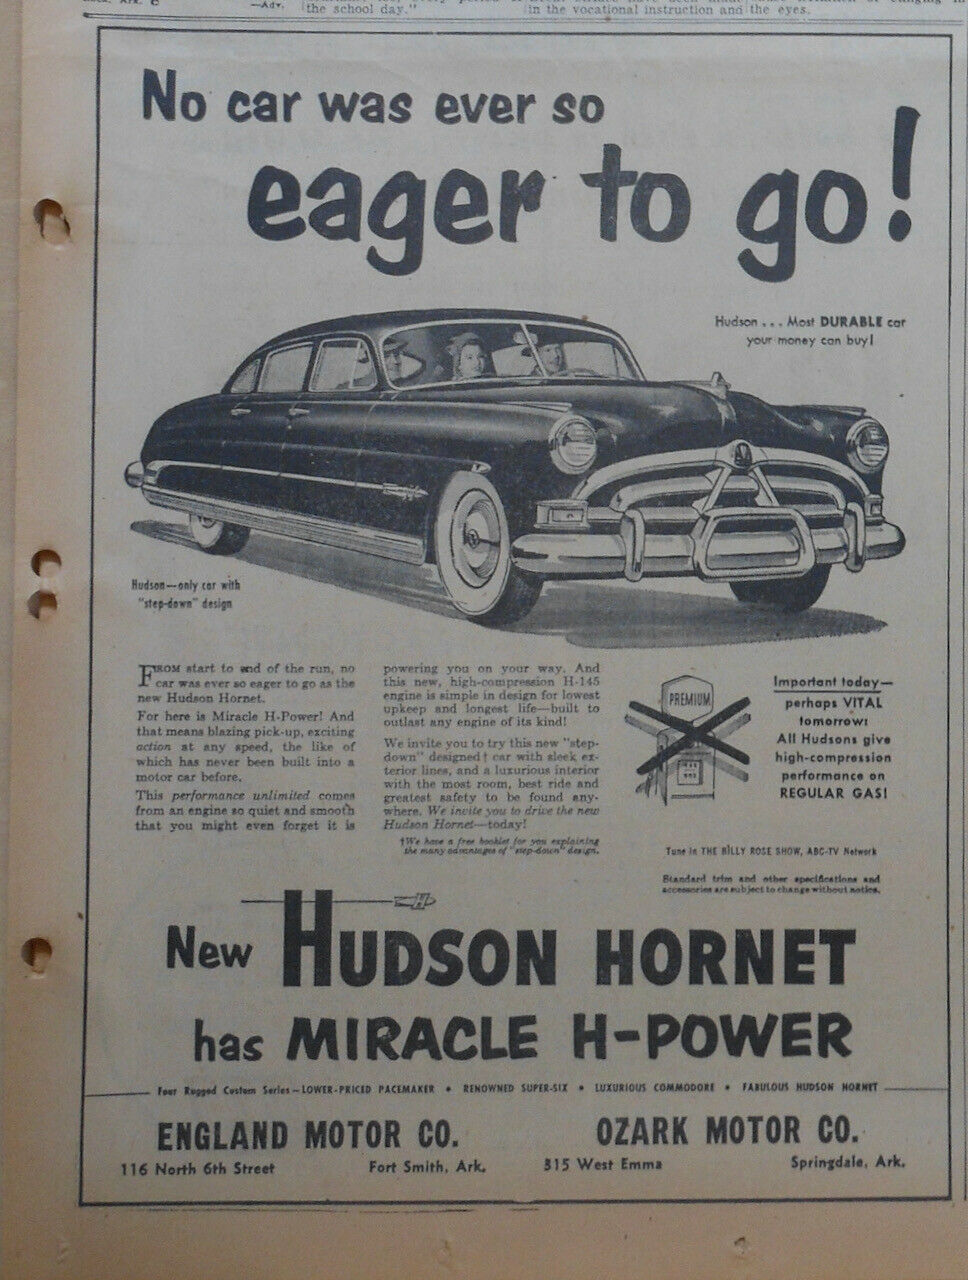 1951 Newspaper Ad For Hudson - No Car Ever So Eager To Go! 1951 Hornet